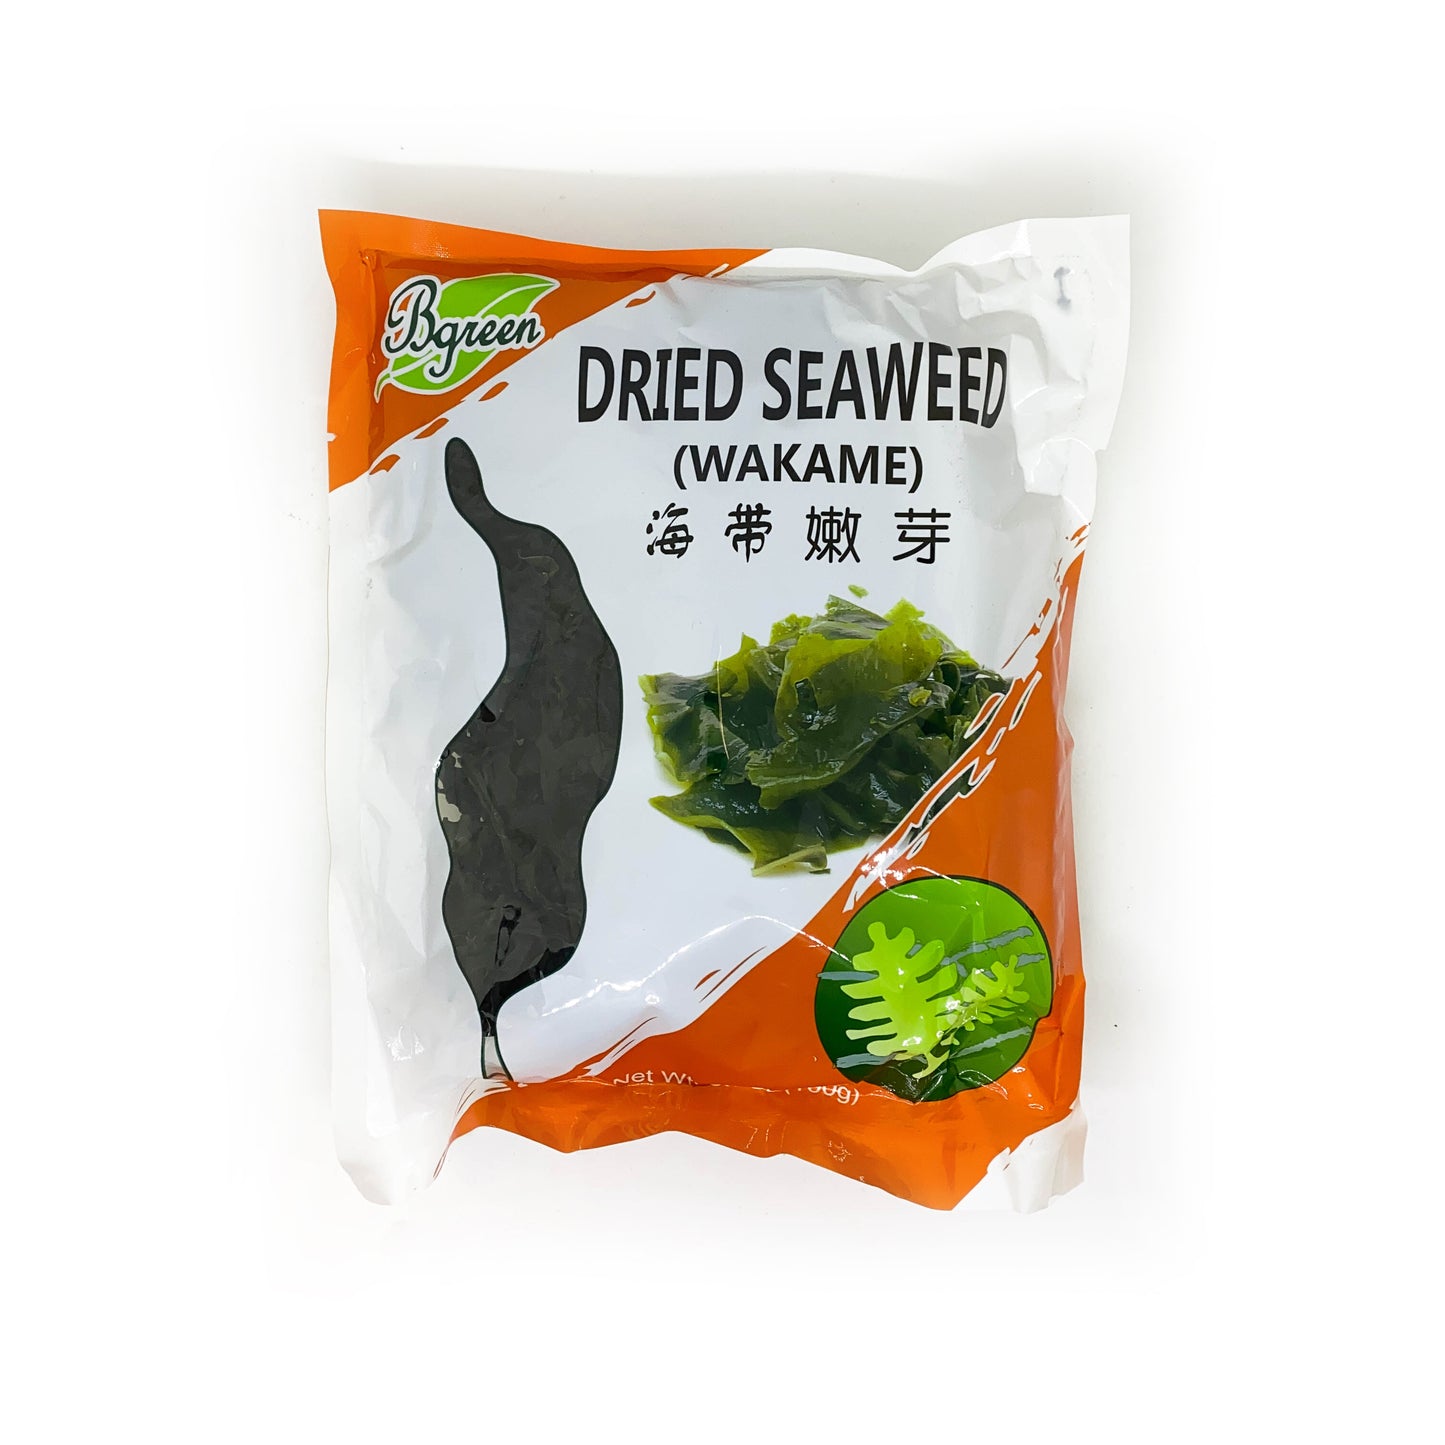 Dried Seaweed Bgreen 海带嫩芽